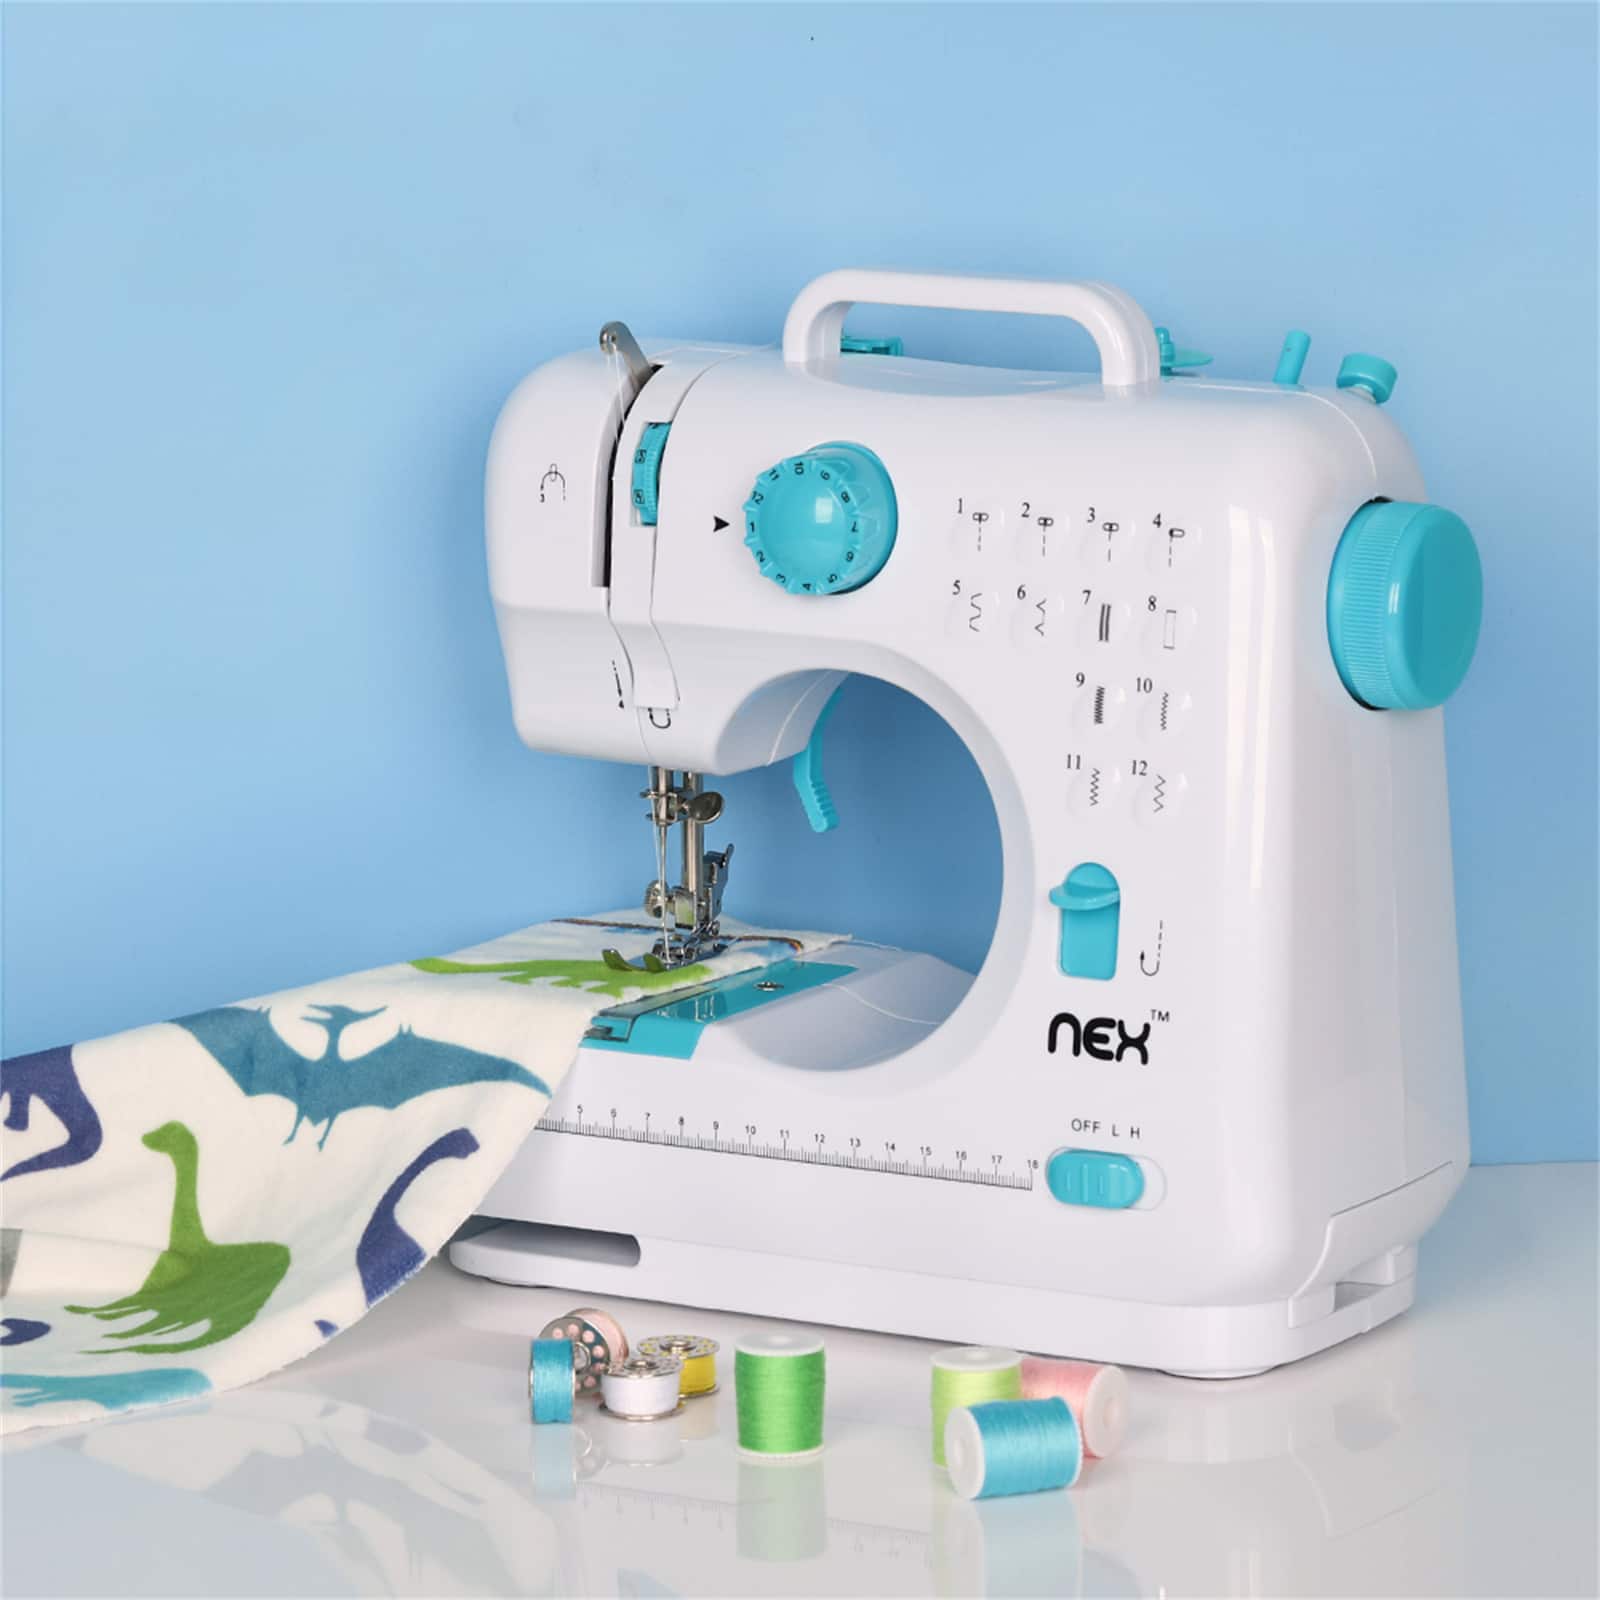 NEX&#x2122; Indigo Blue Modern Crafting Sewing Machine with 12 Built-In Stitches